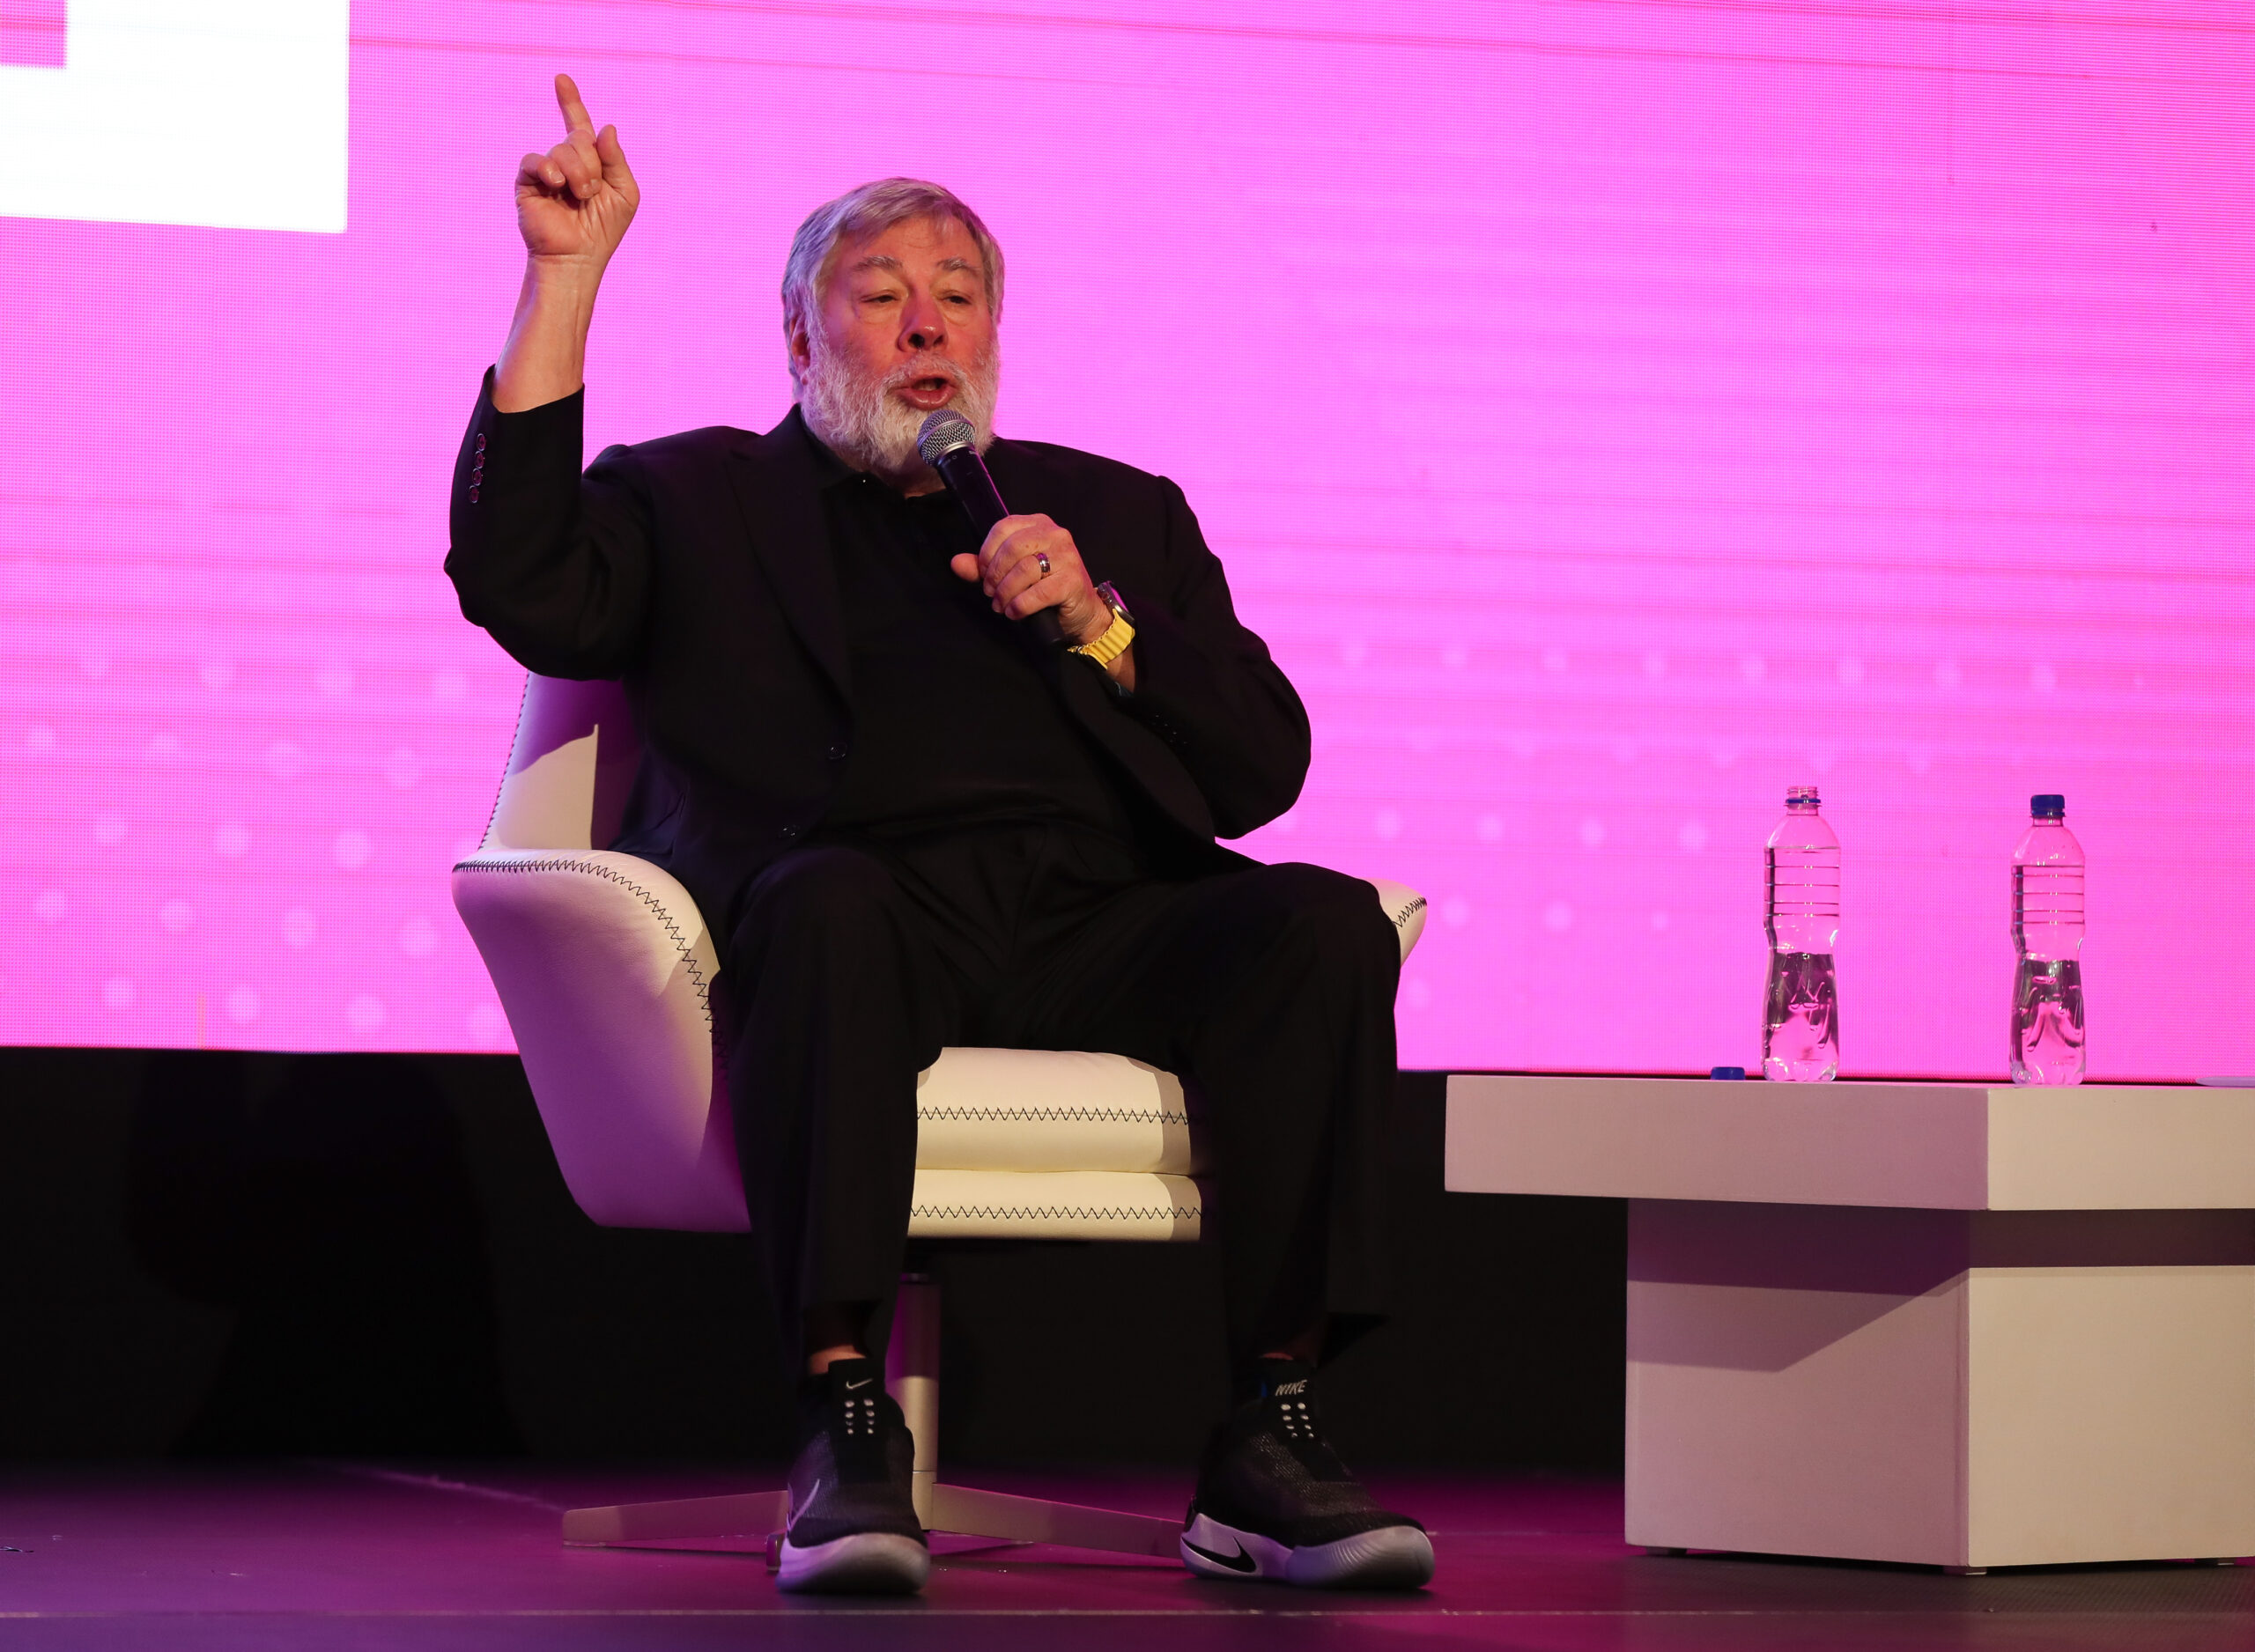 Steve Wozniak po raz kolejny pojawia się publicznie w Ekwadorze po hospitalizacji w Meksyku